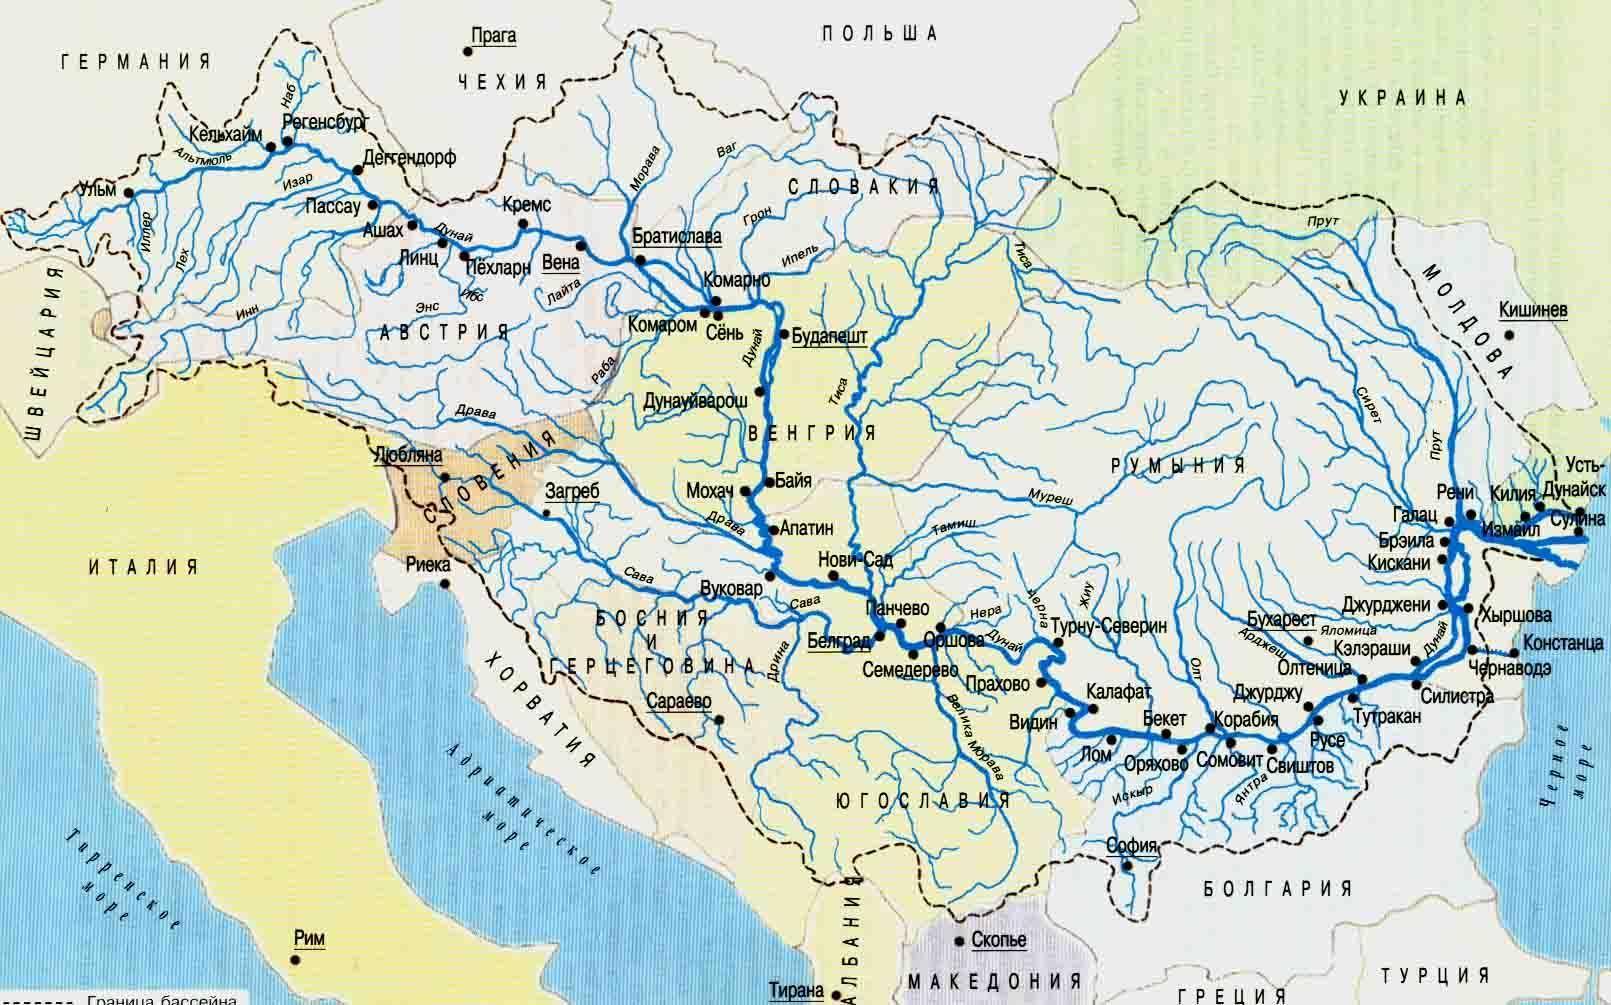 Реки бассейна индийского океана в евразии. Бассейн реки Дунай на карте. Исток реки Дунай на карте. Река Дунай карта географическая. Река Дунай на карте Украины.